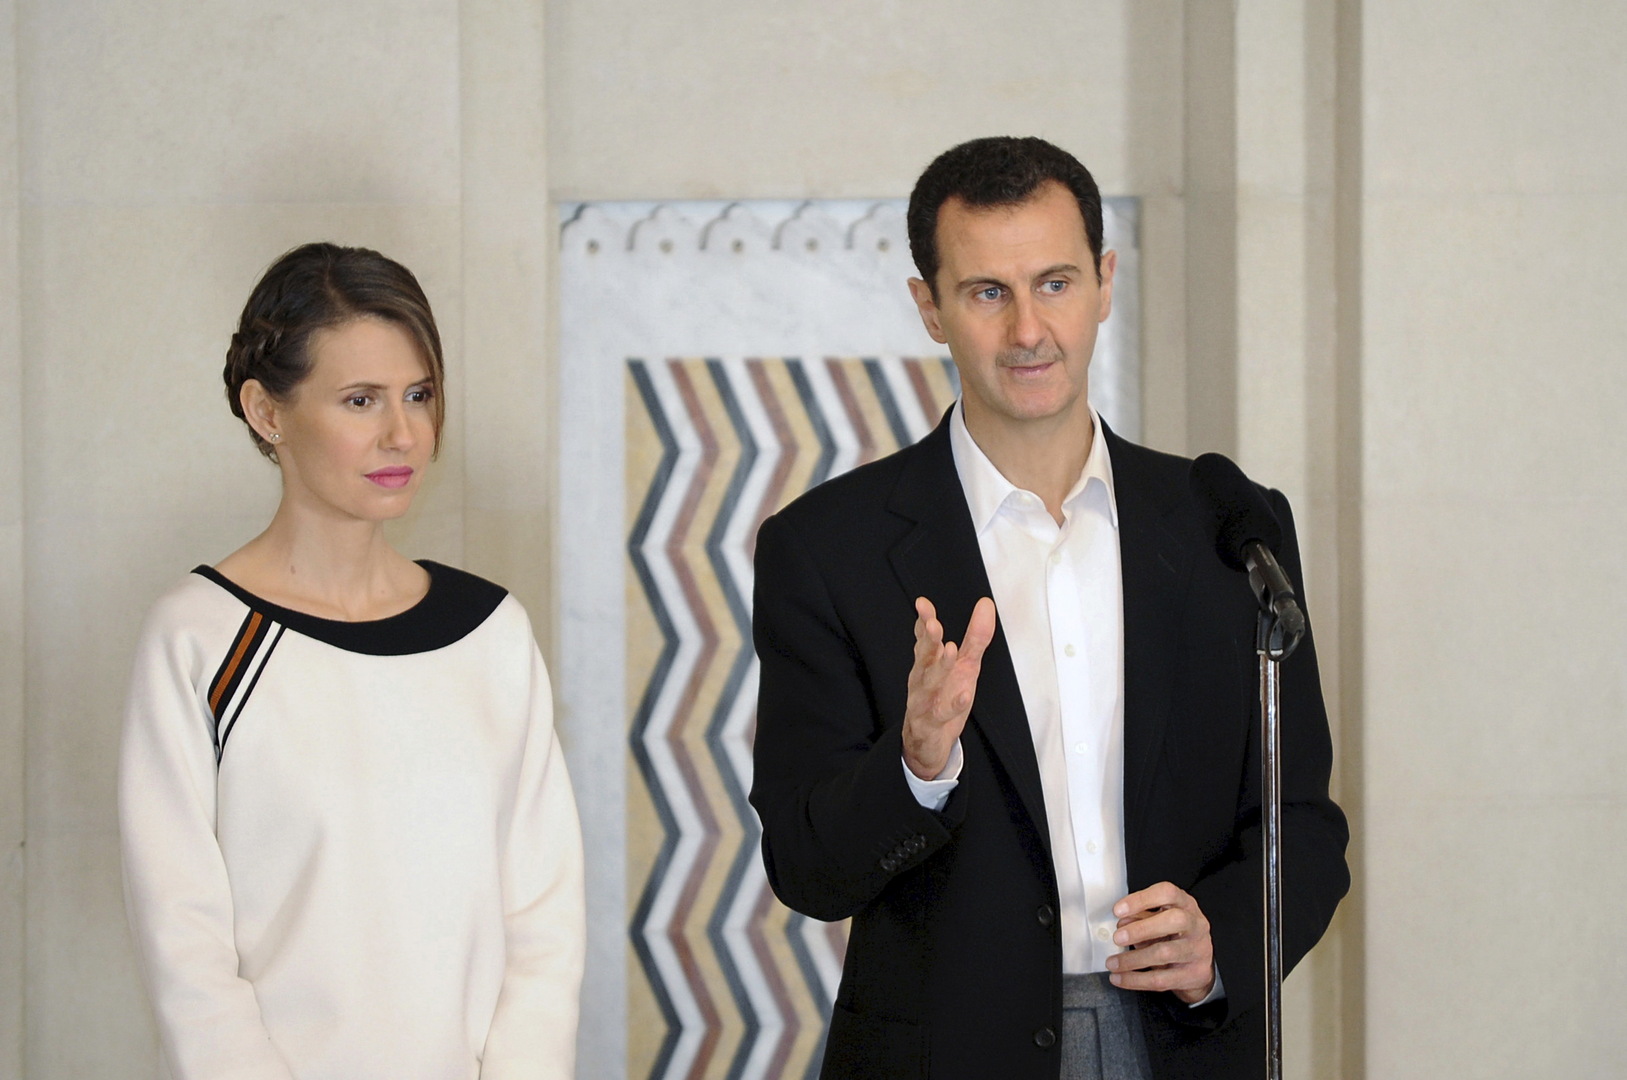 أول تعليق روسي على أنباء عن تحقيق جنائي بريطاني بحق أسماء الأسد